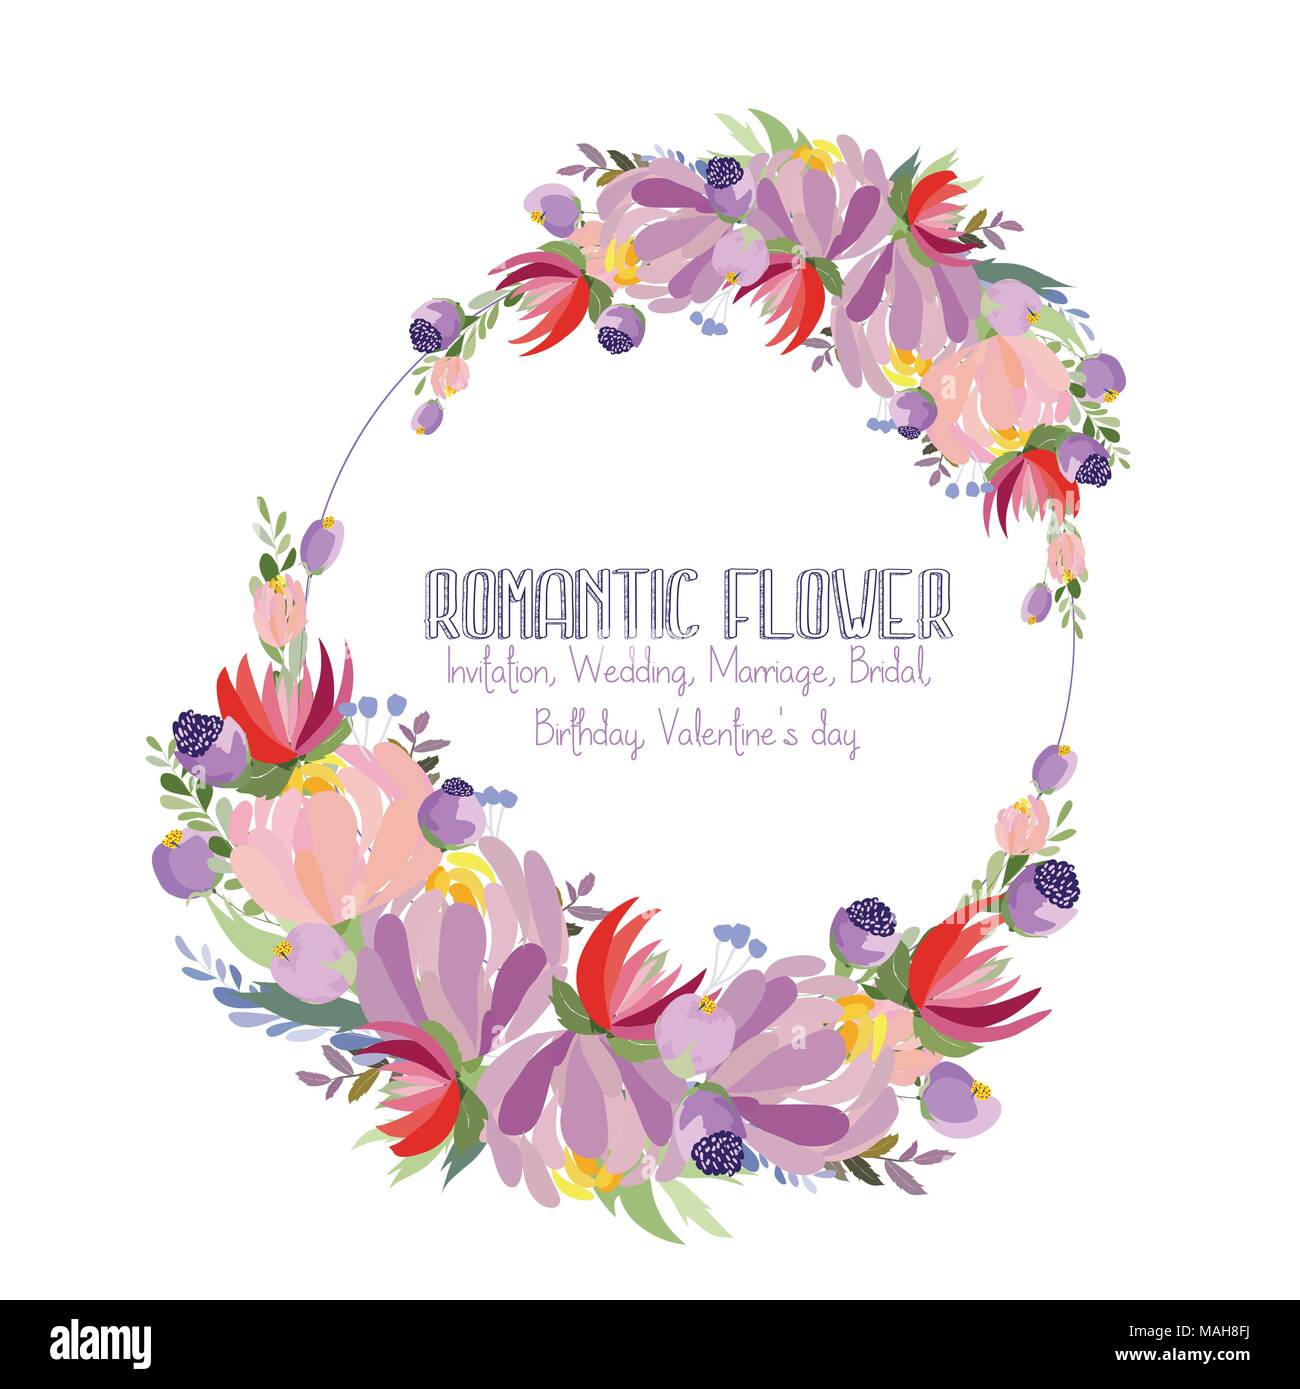 Floral frame avec l'automne fleurs d'hortensias, de rose, de magnolia et de lavande sur fond blanc Illustration de Vecteur